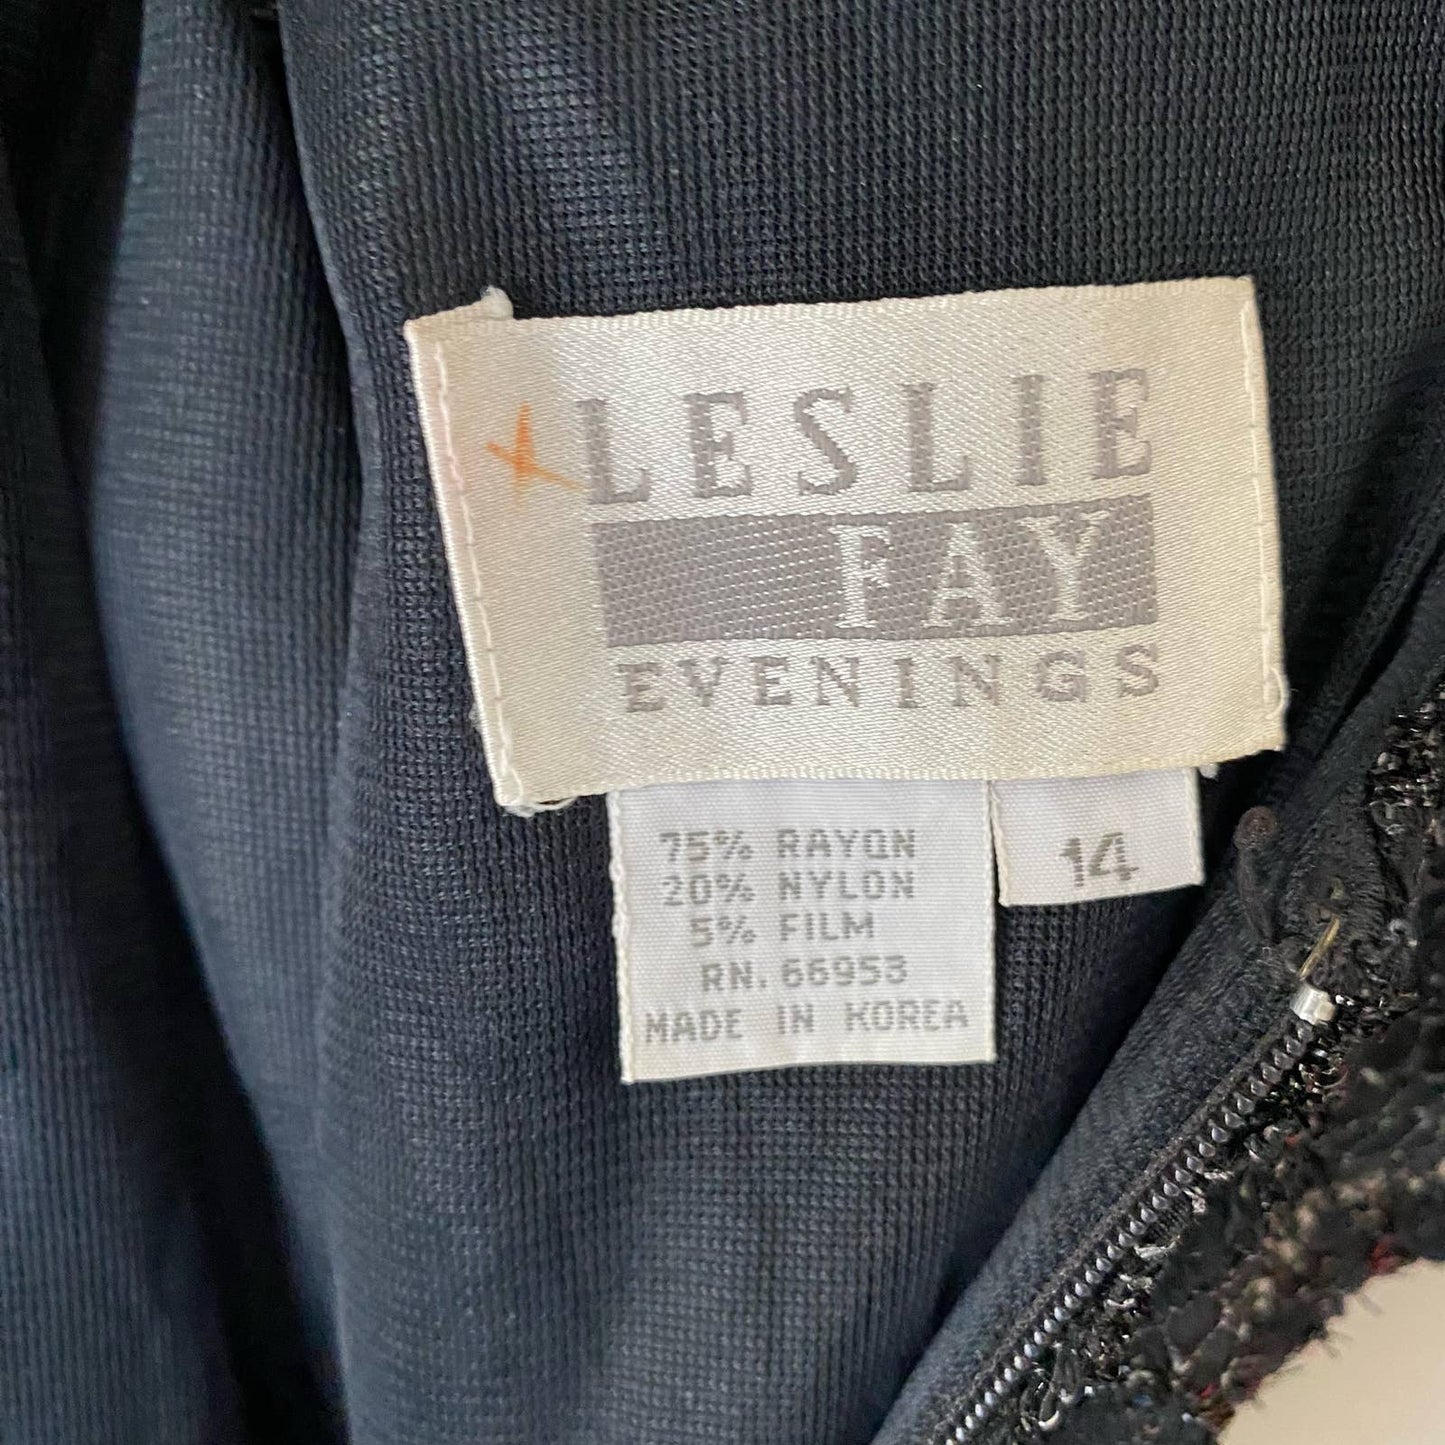 Leslie fae 14 lace black cocktail dress